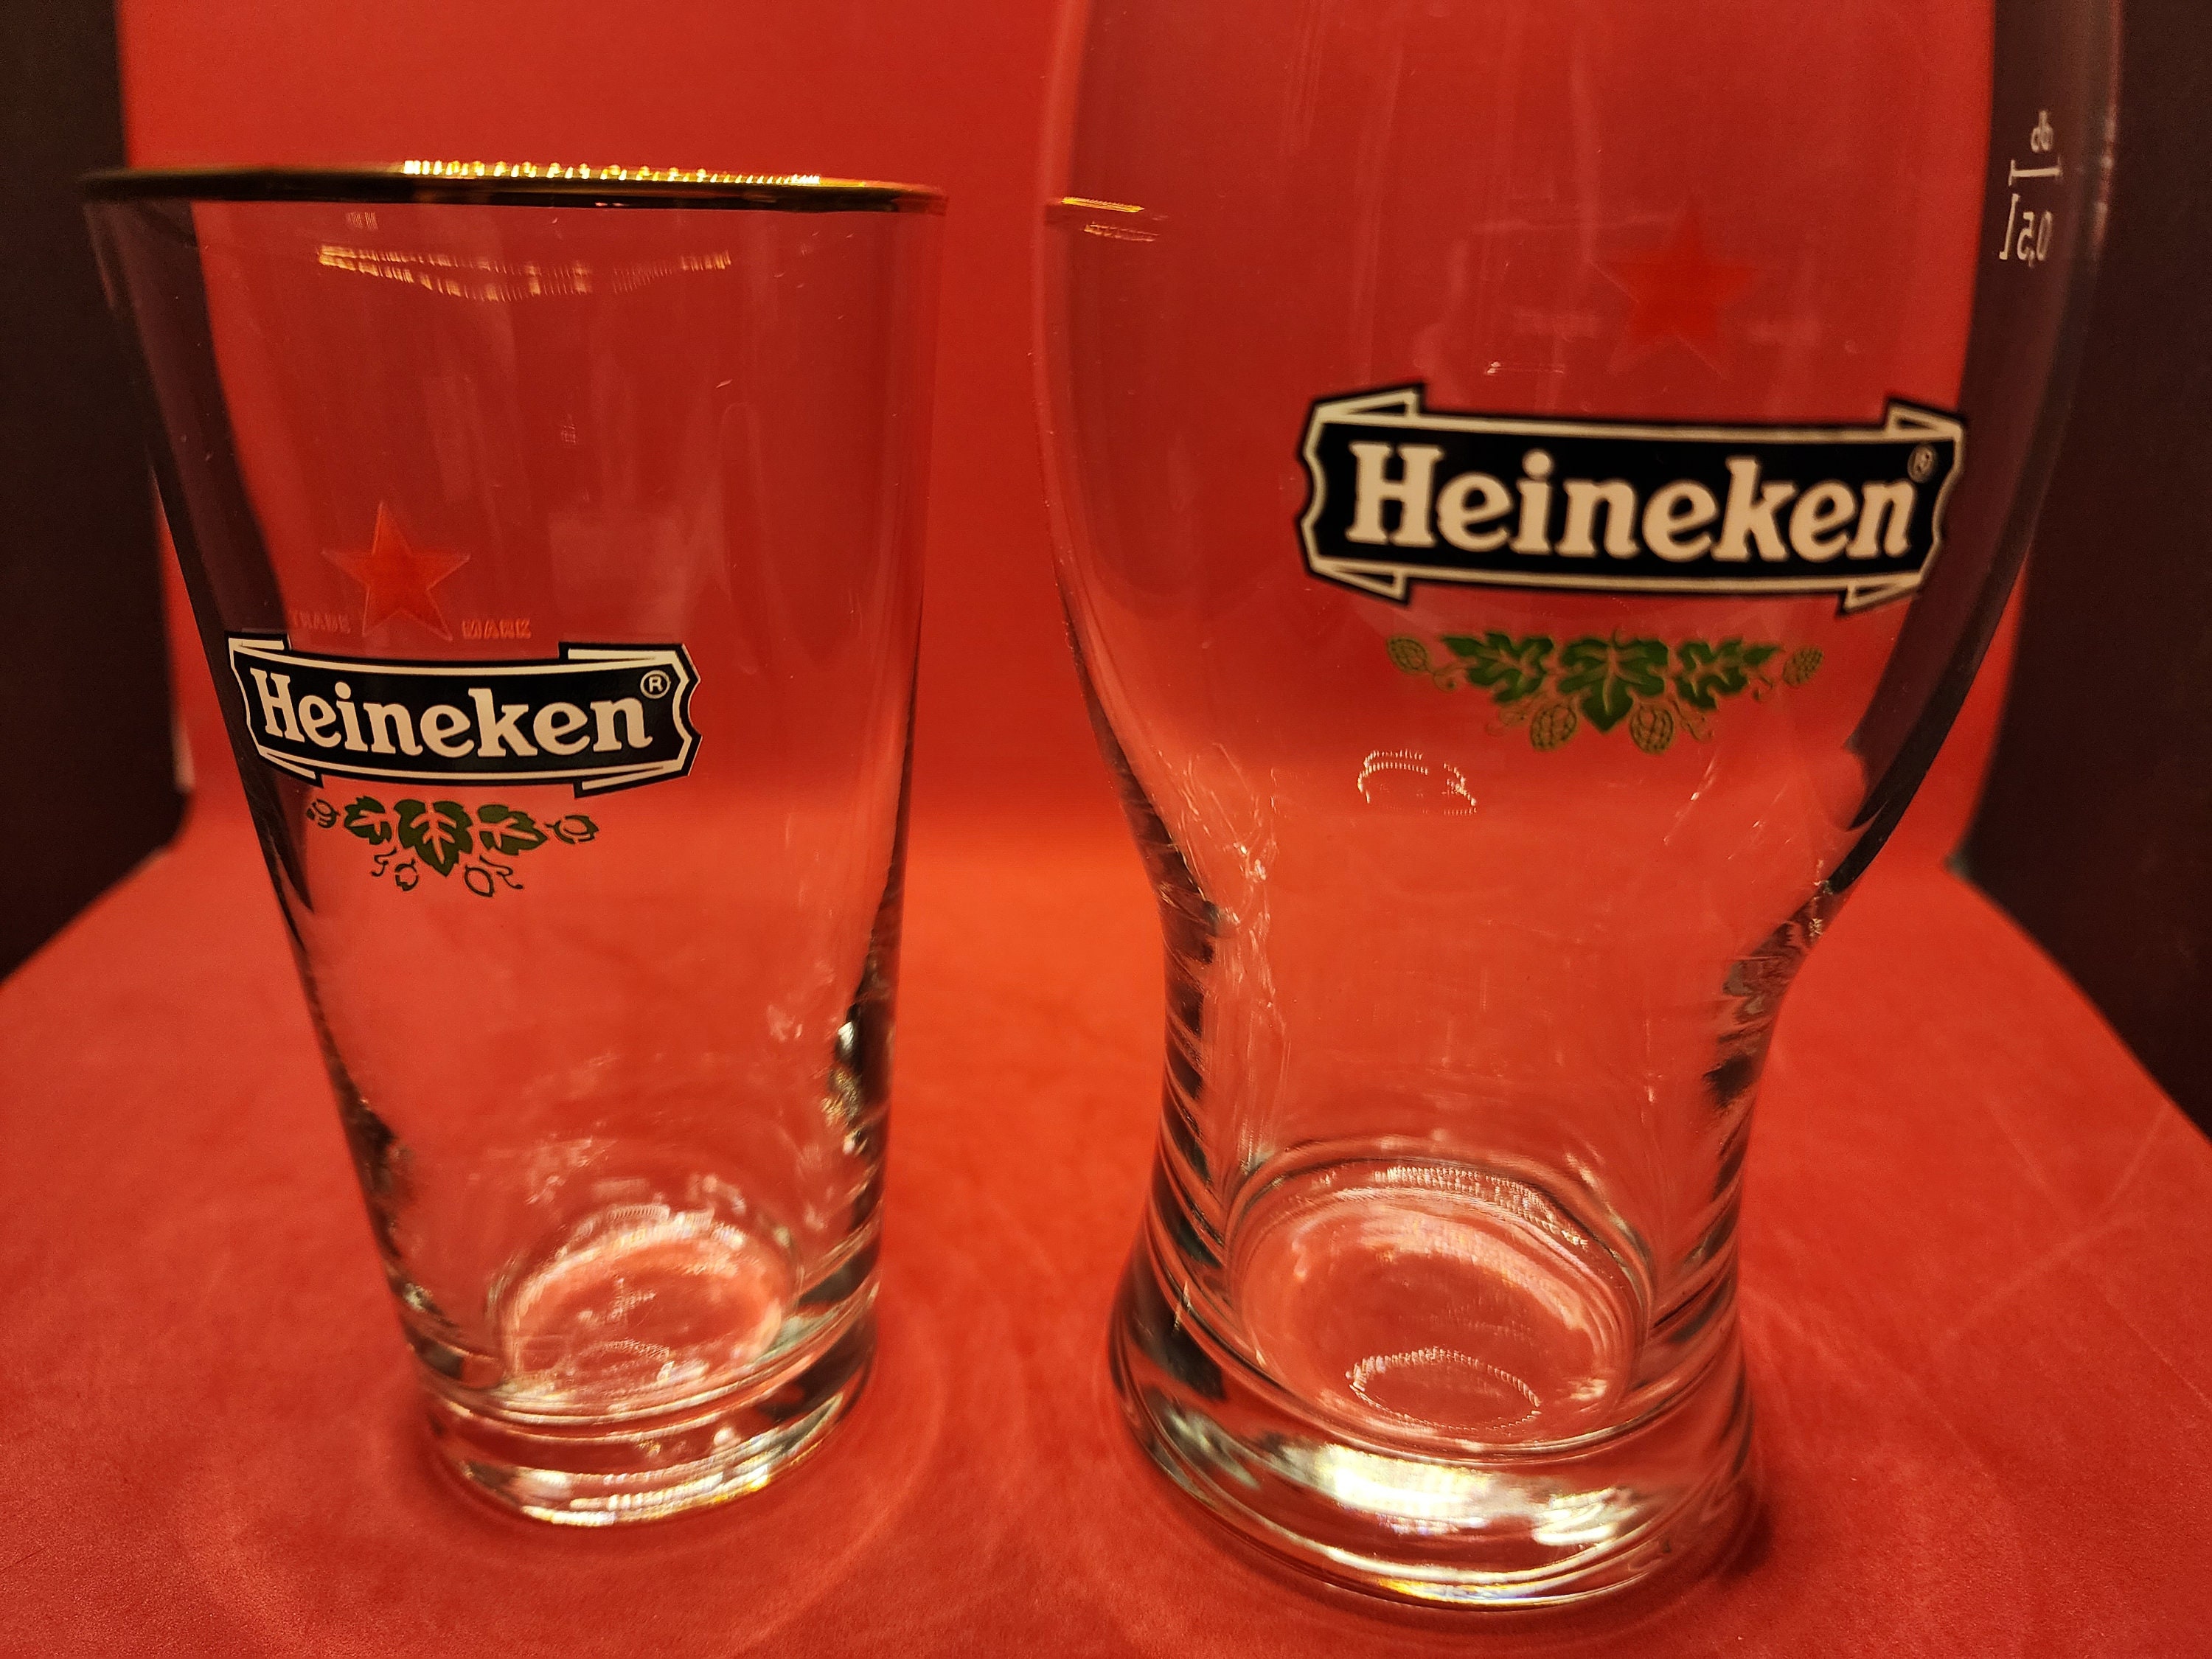 Heineken Small Beer Glass Red Star Logo Bier Glass approx 10oz